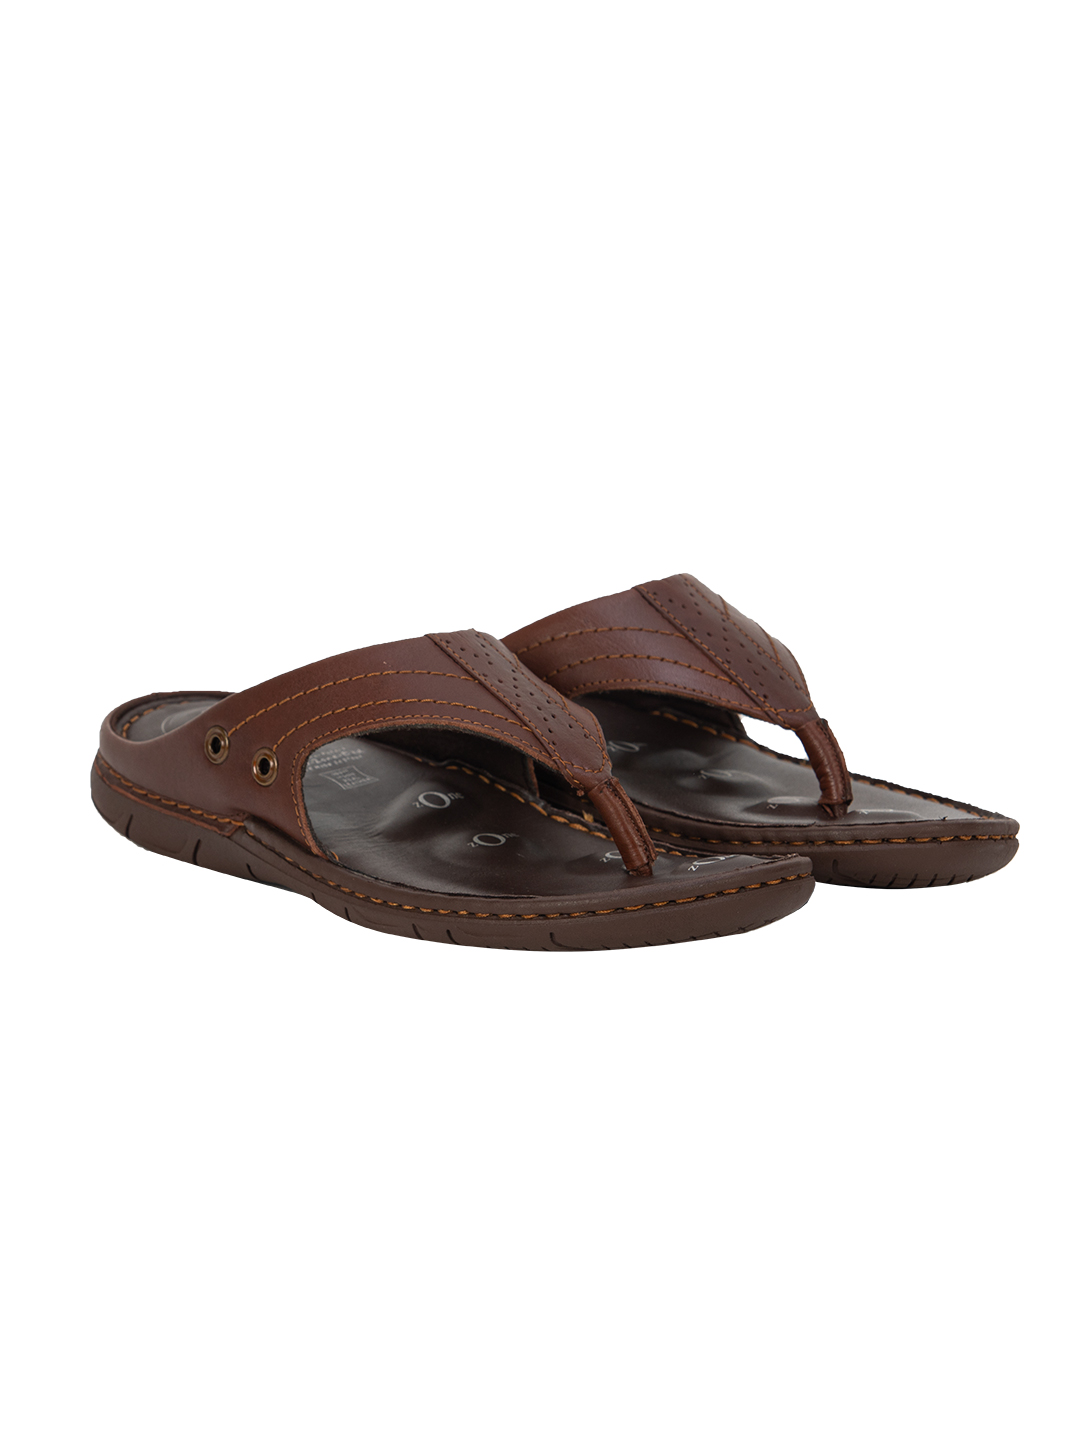 Buy Von Wellx Alex Comfort Brown Slippers Online in Qatar